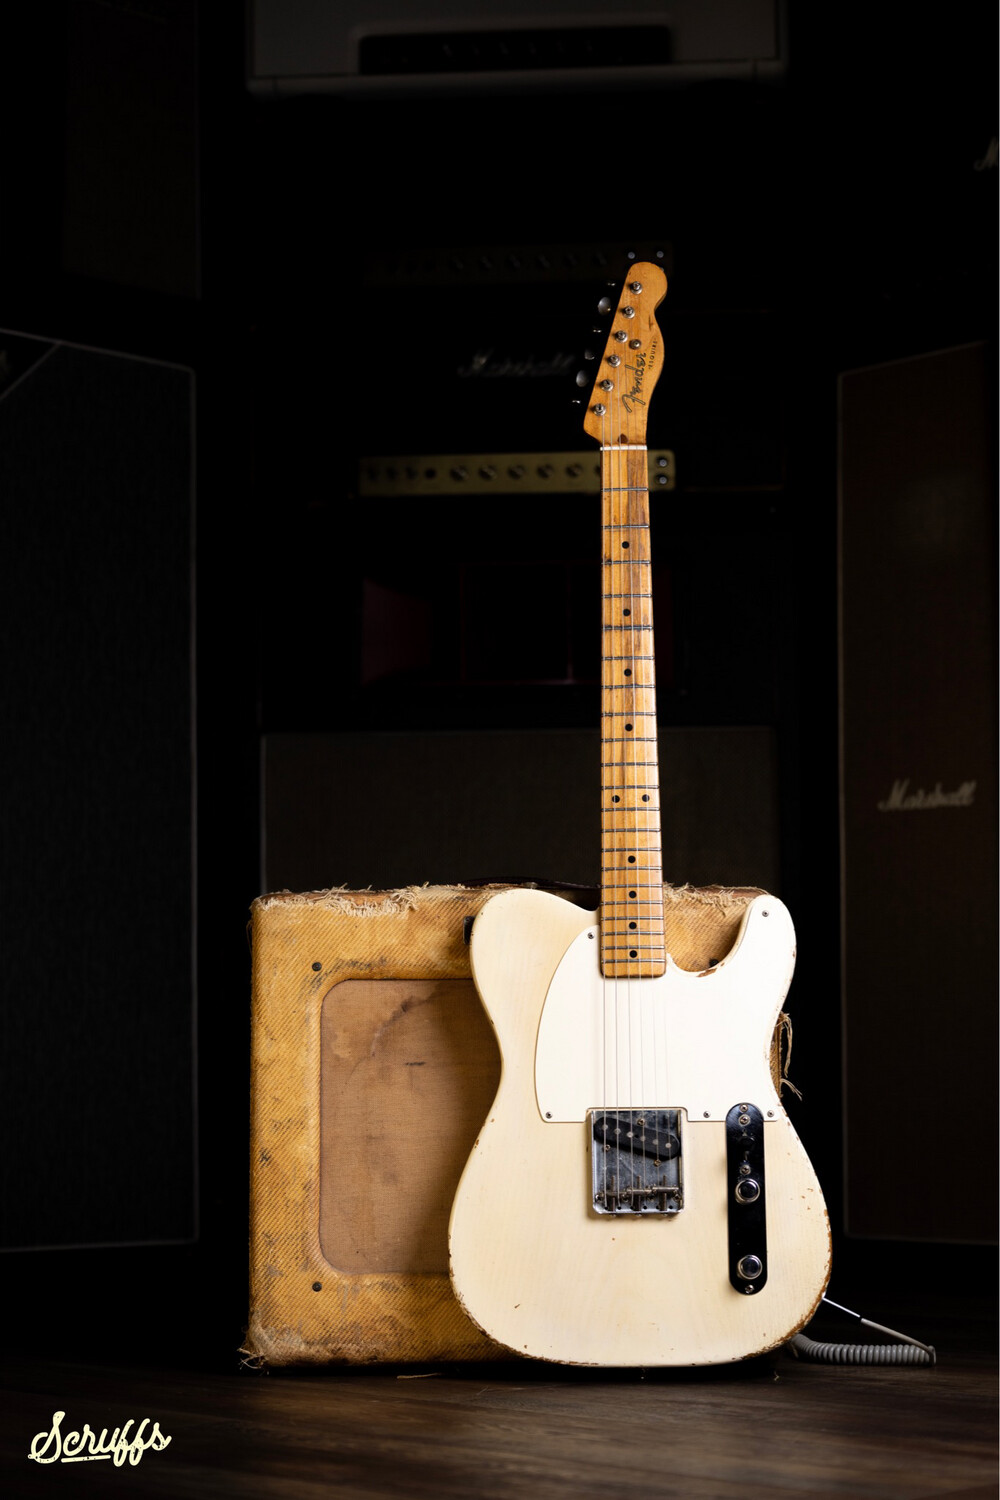 1955 Fender Esquire